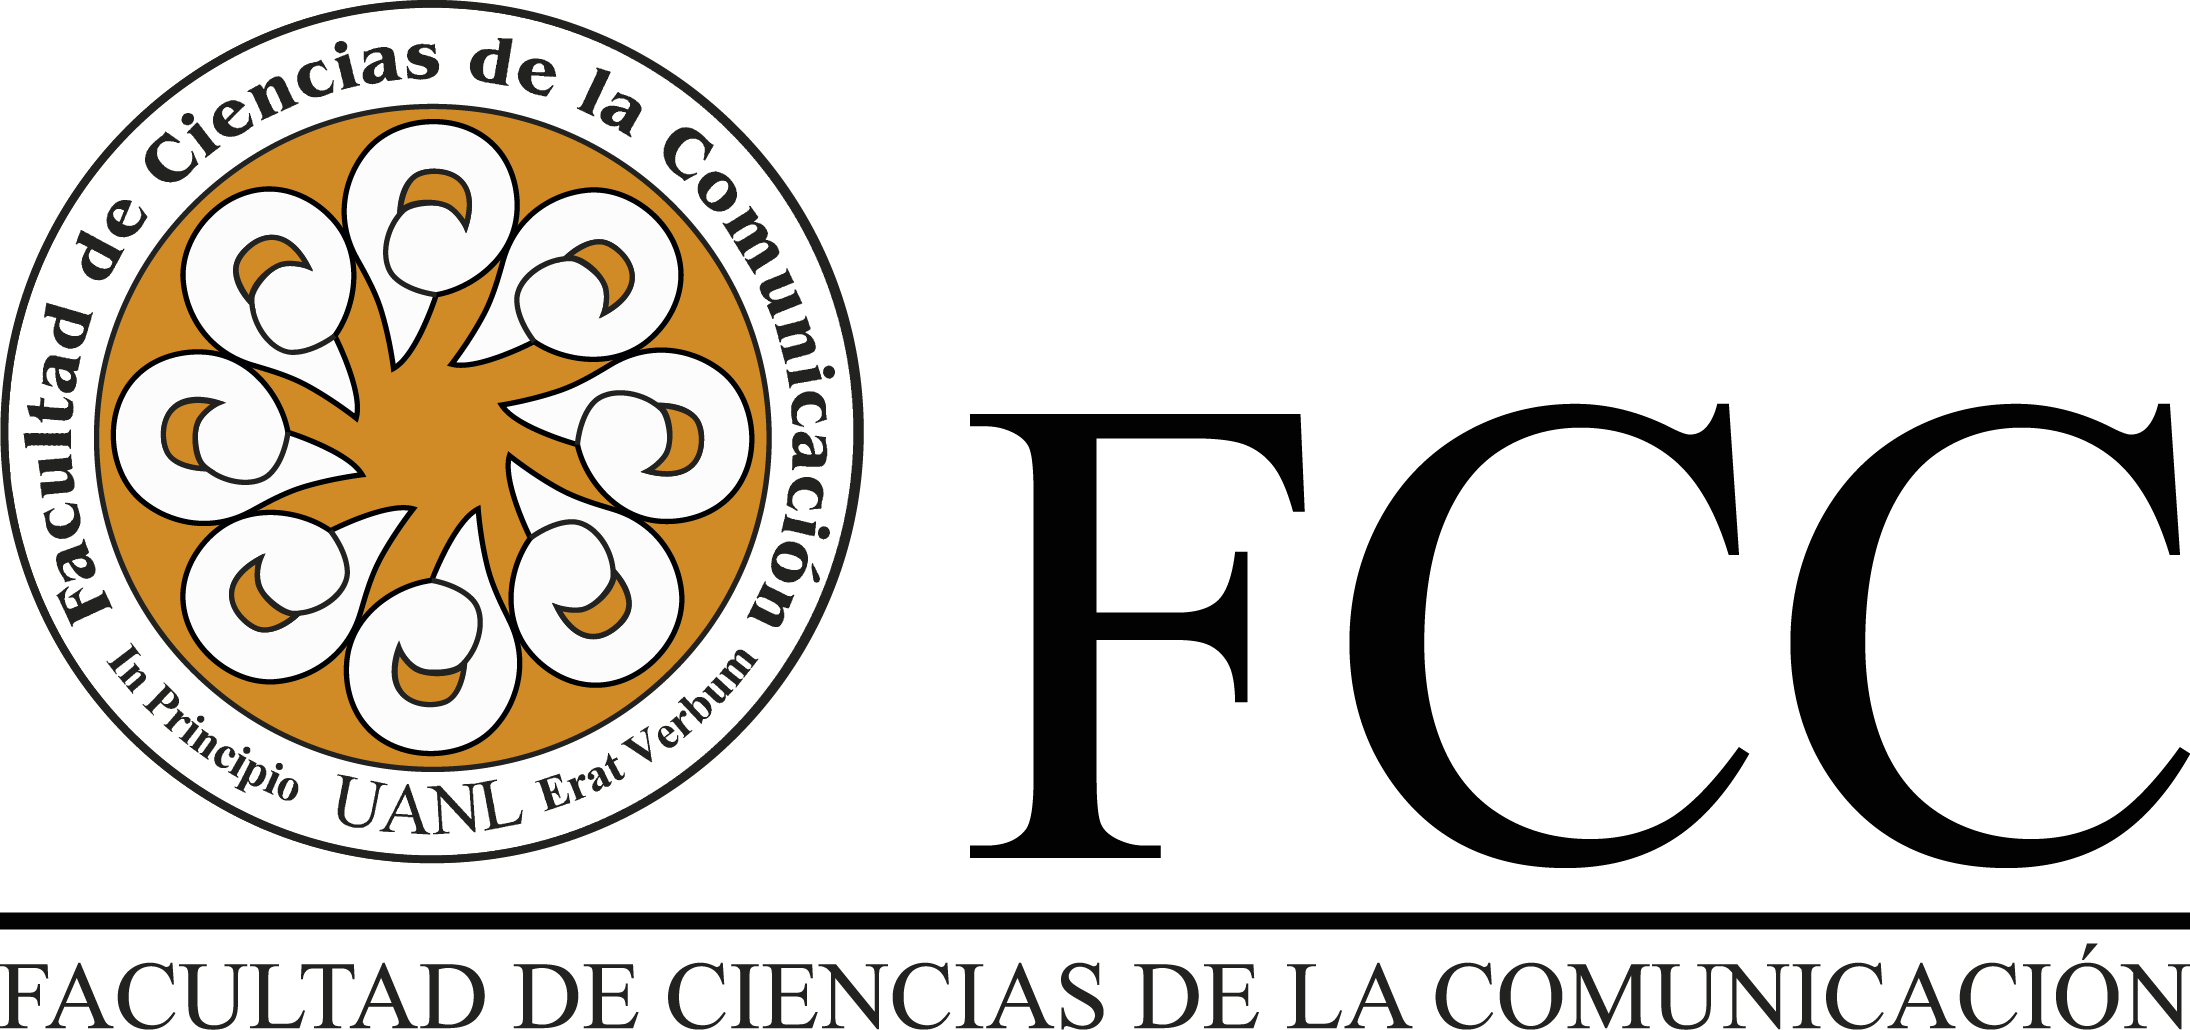 FCC Logo - Logo FCC 1 – Facultad de Ciencias de la Comunicación